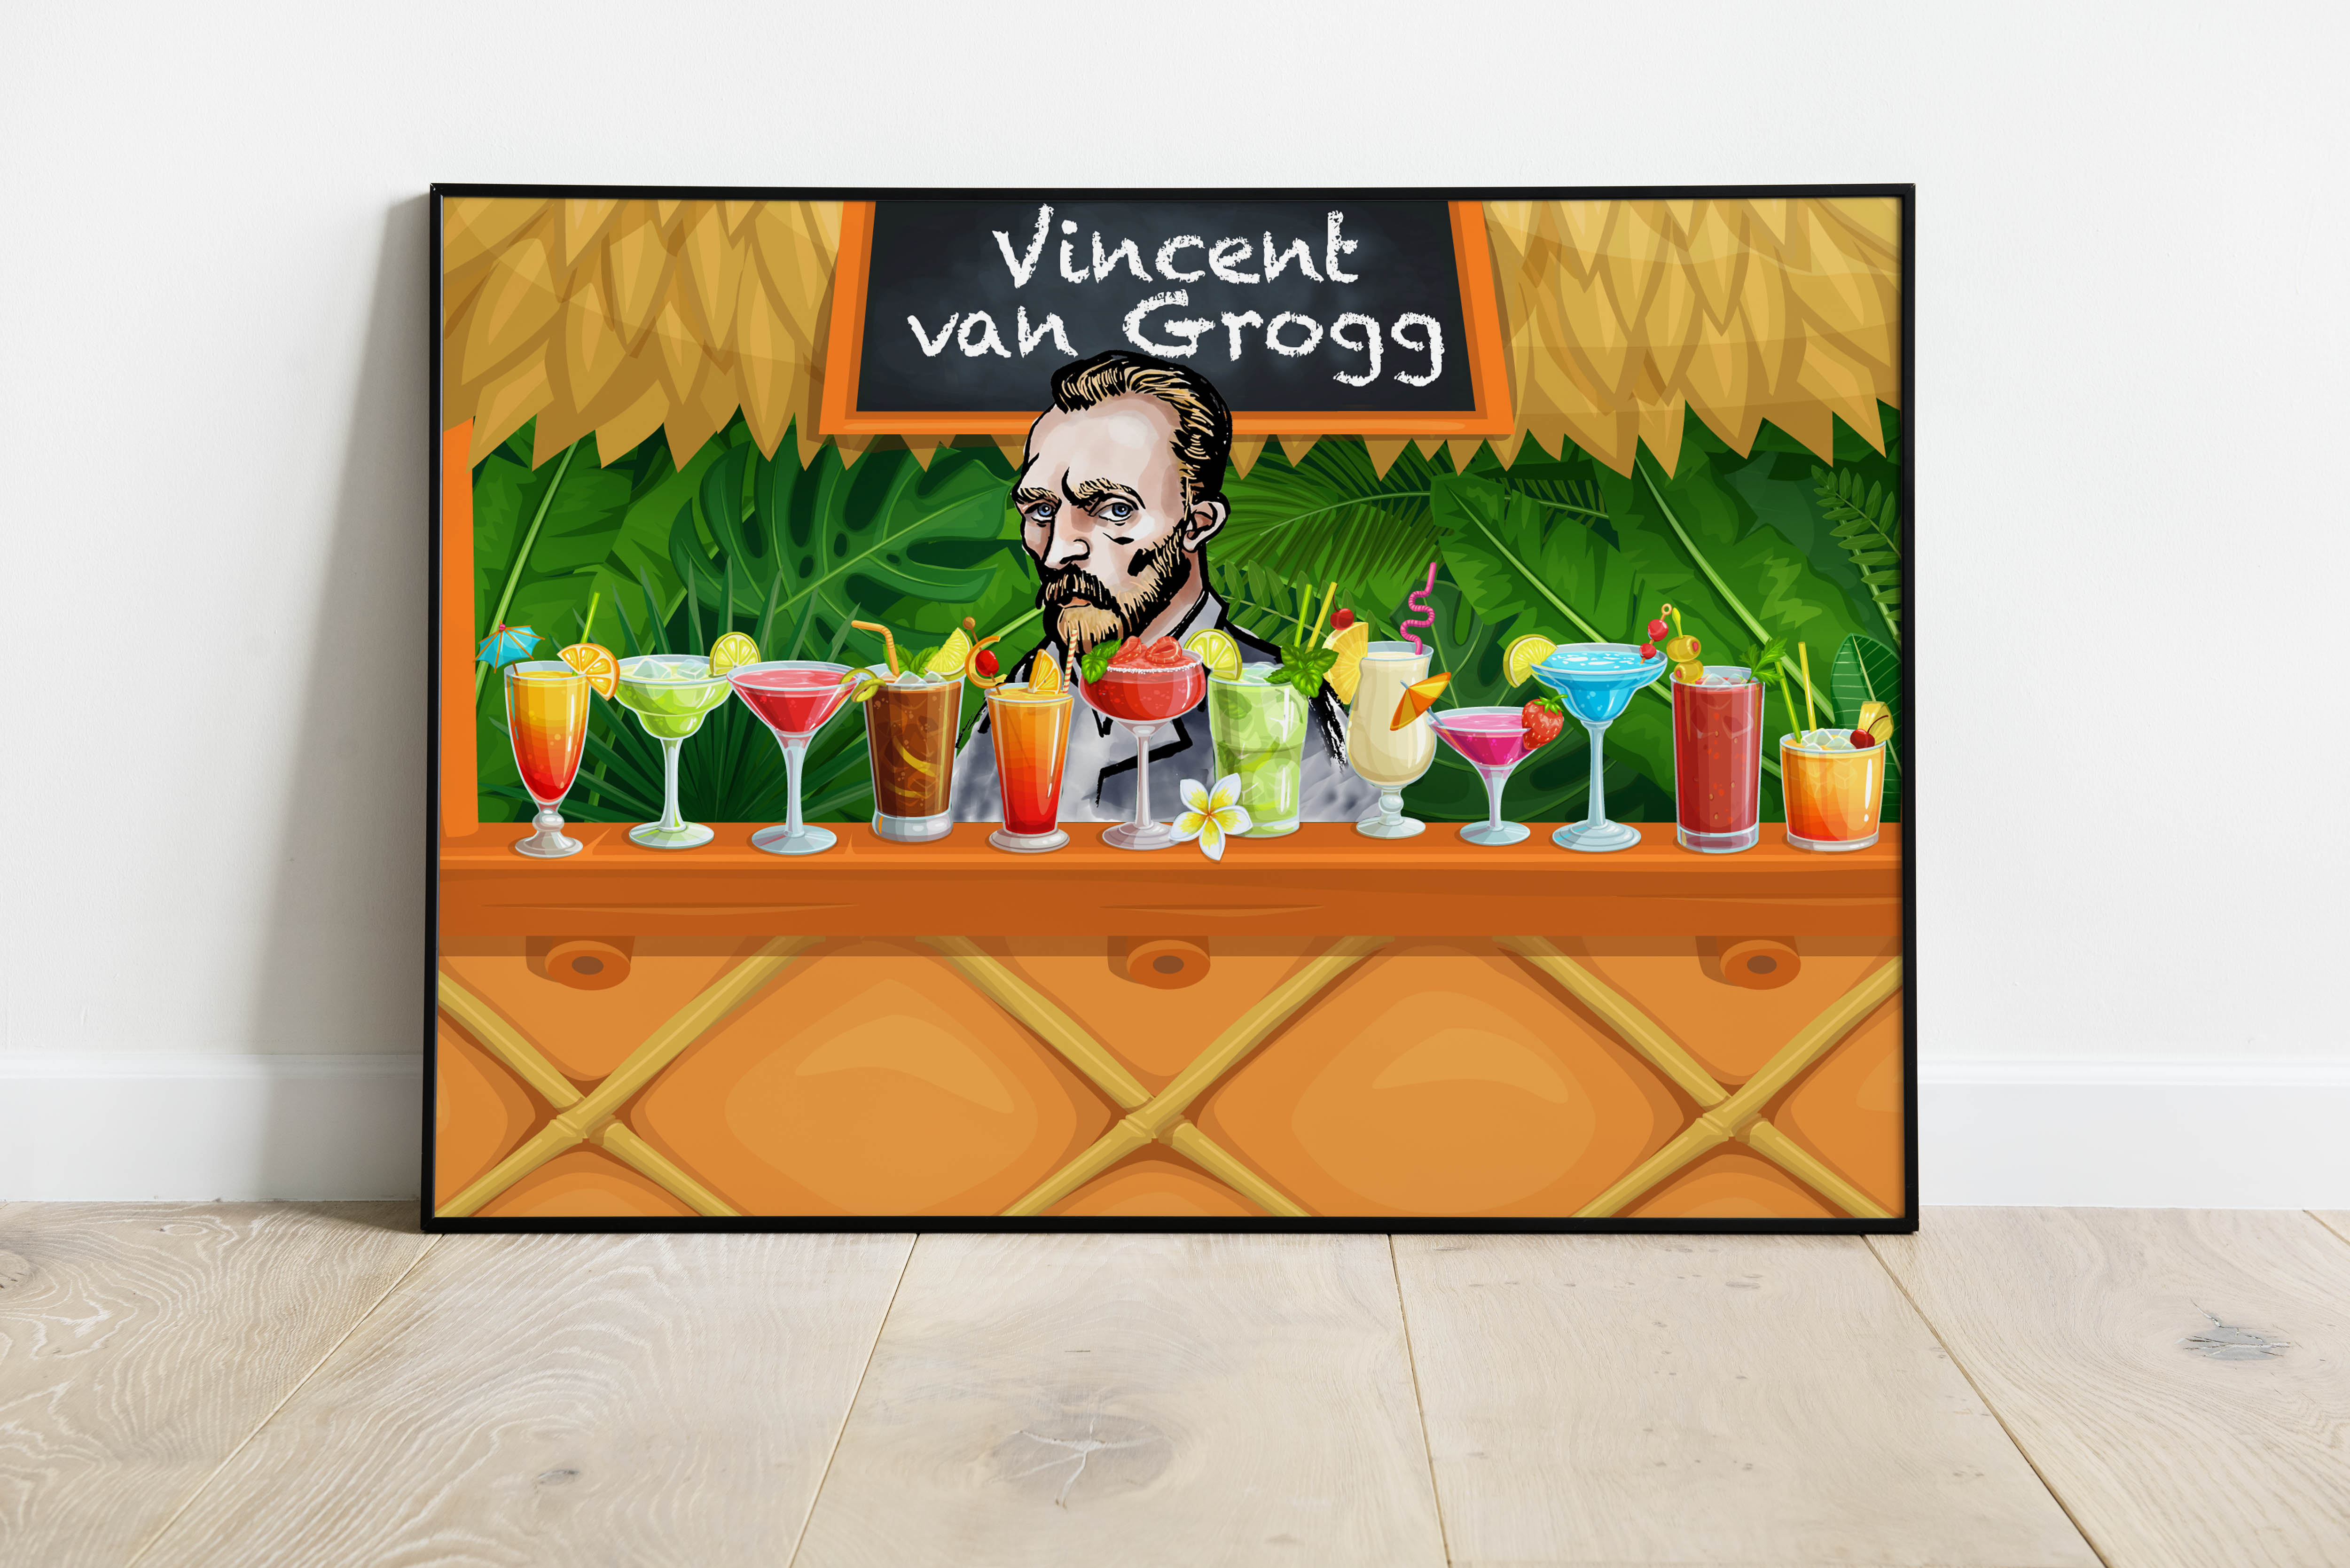 "Van Grogg"